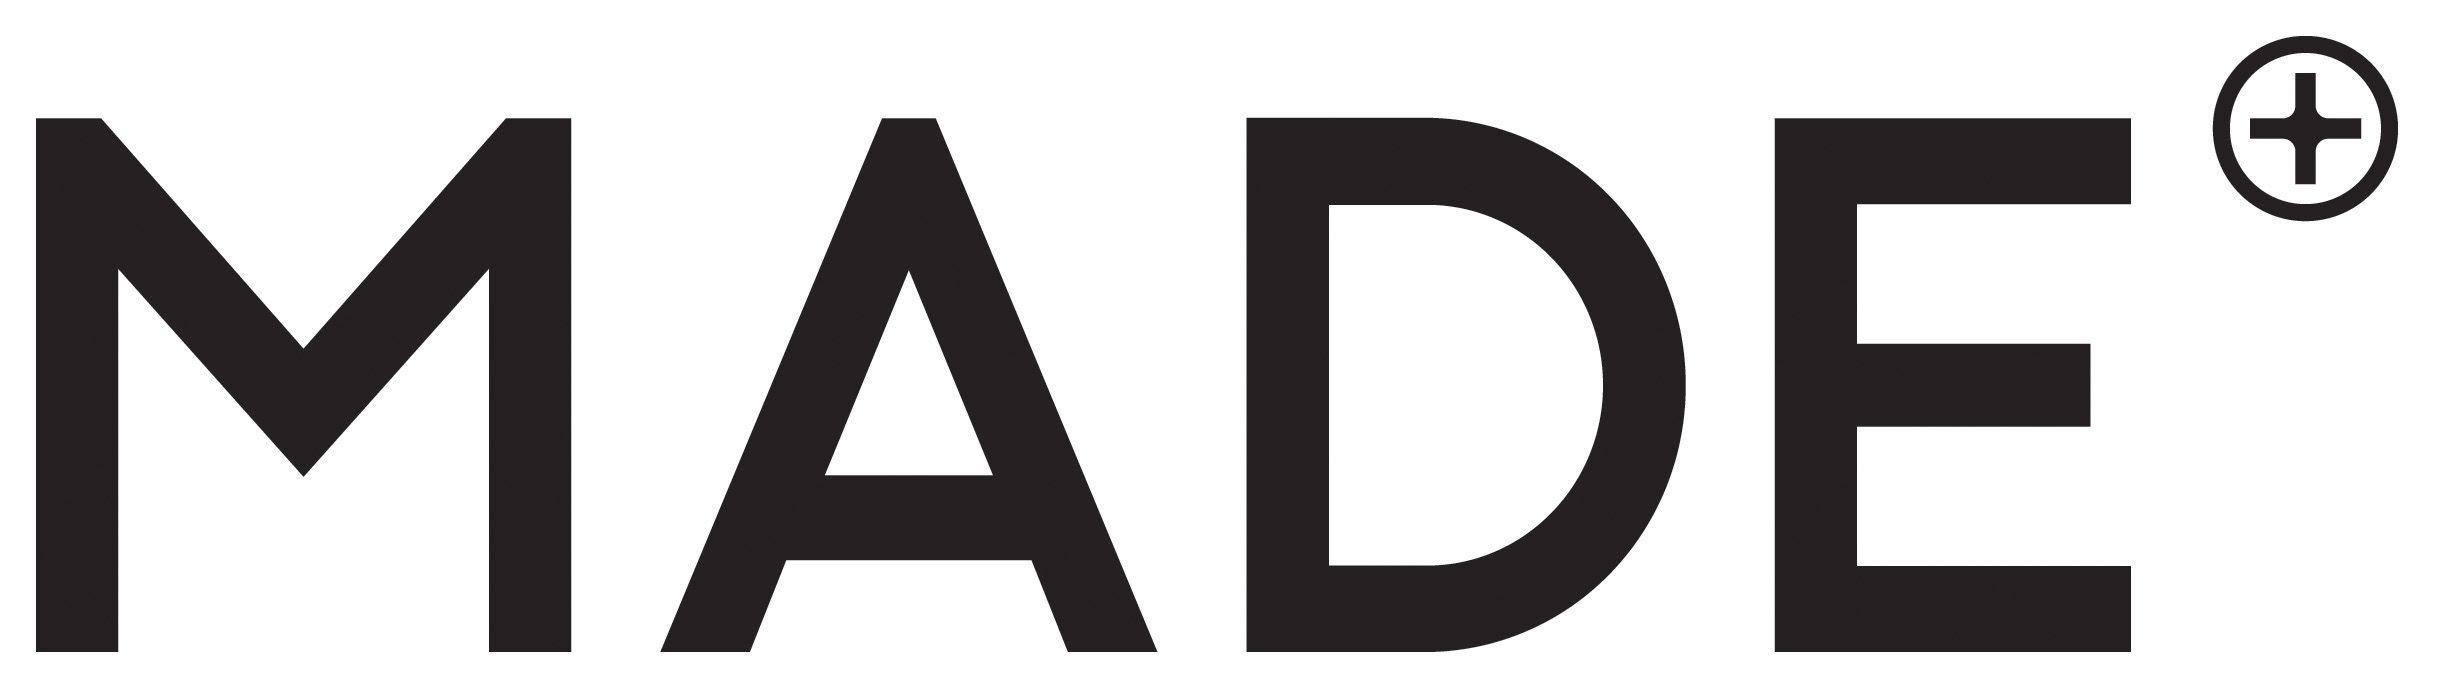 Made.com Logo - Made.com: The MADE.COM interior design service | Milled